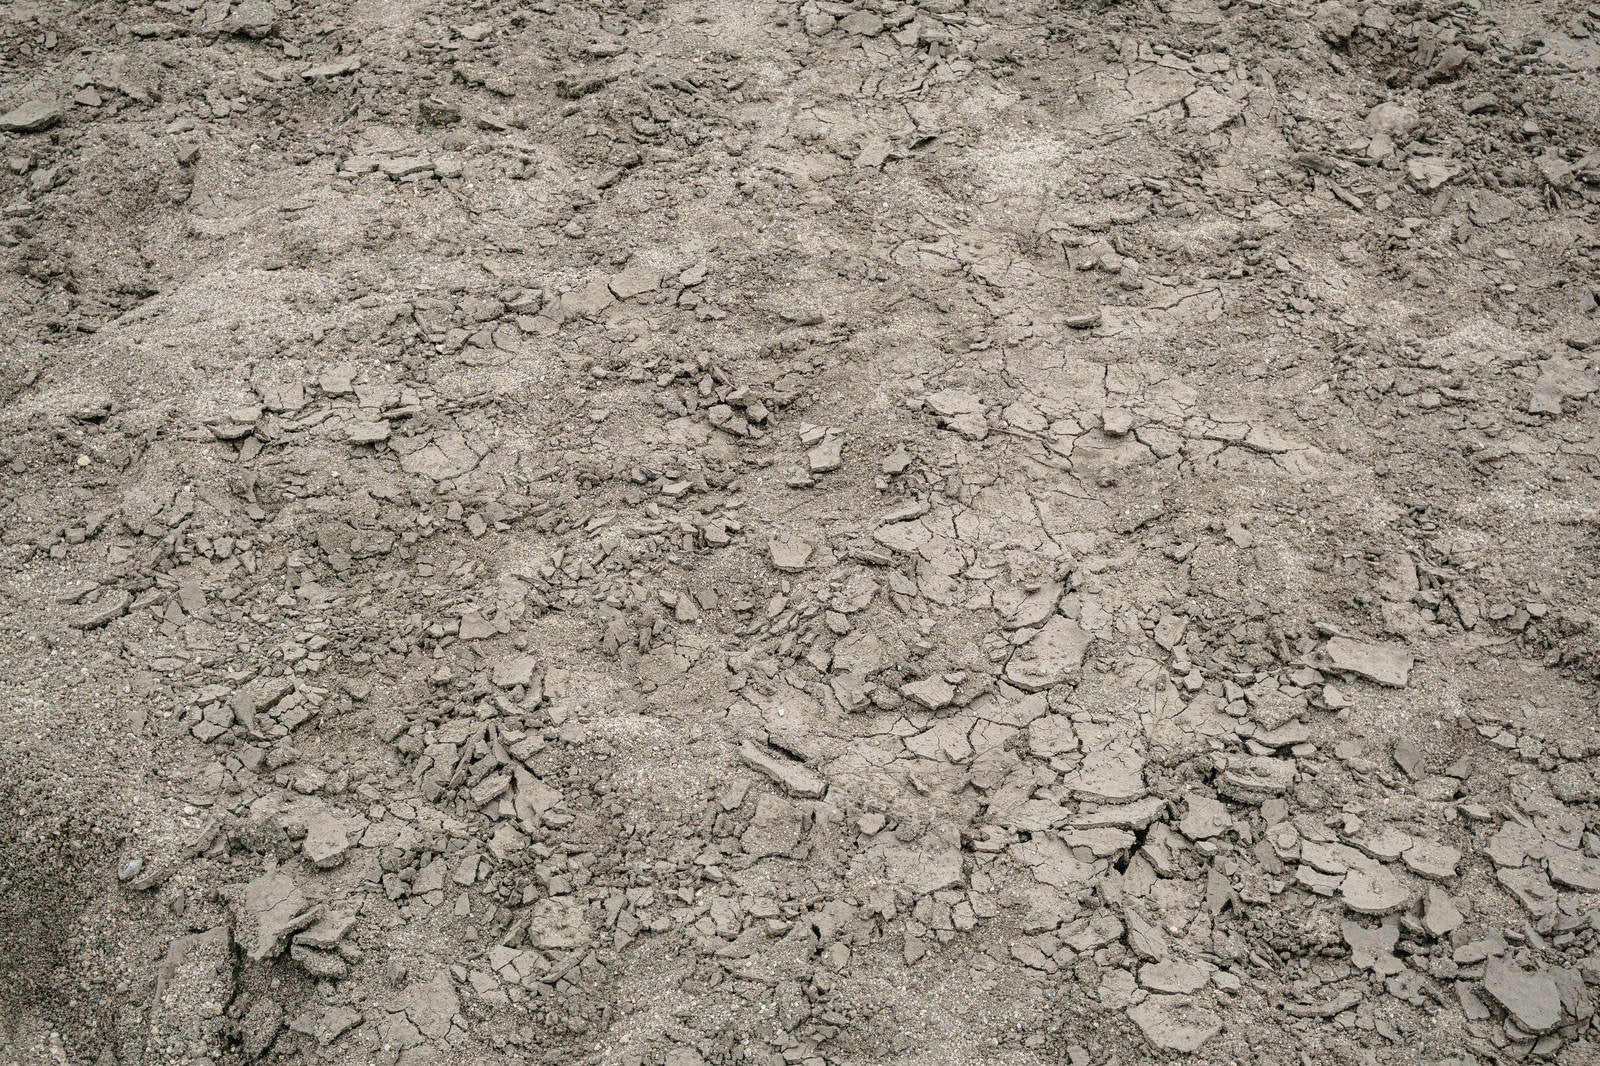 「干上がりひび割れた数日前までダム湖の底だった砂地のテクスチャー」の写真